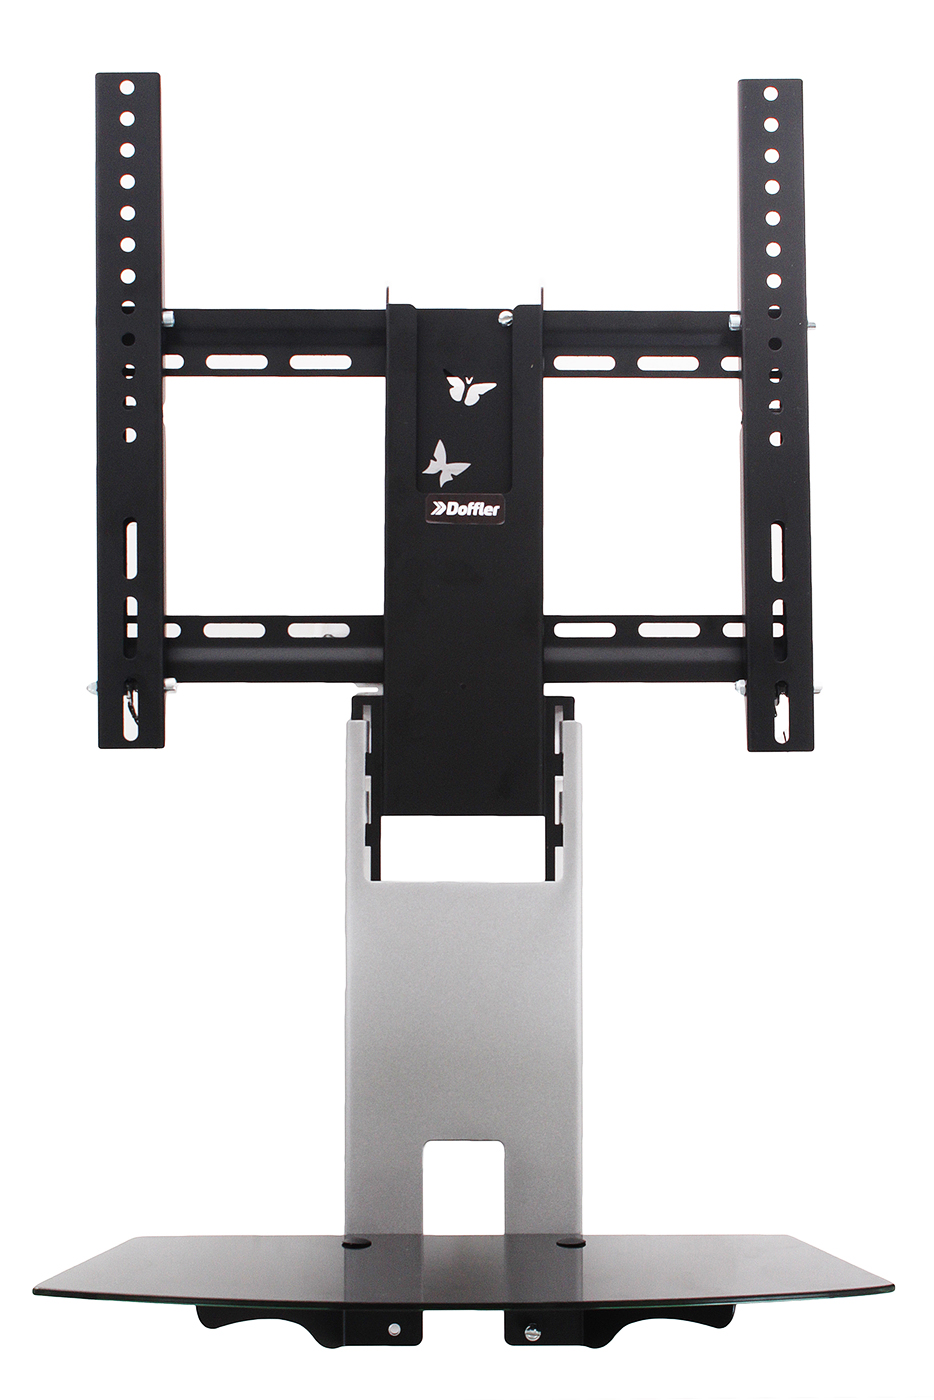 Кронштейн для AV аппаратуры Doffler Wbs 4480, размер 500х200х600 мм, цвет черный 372569 - фото 1